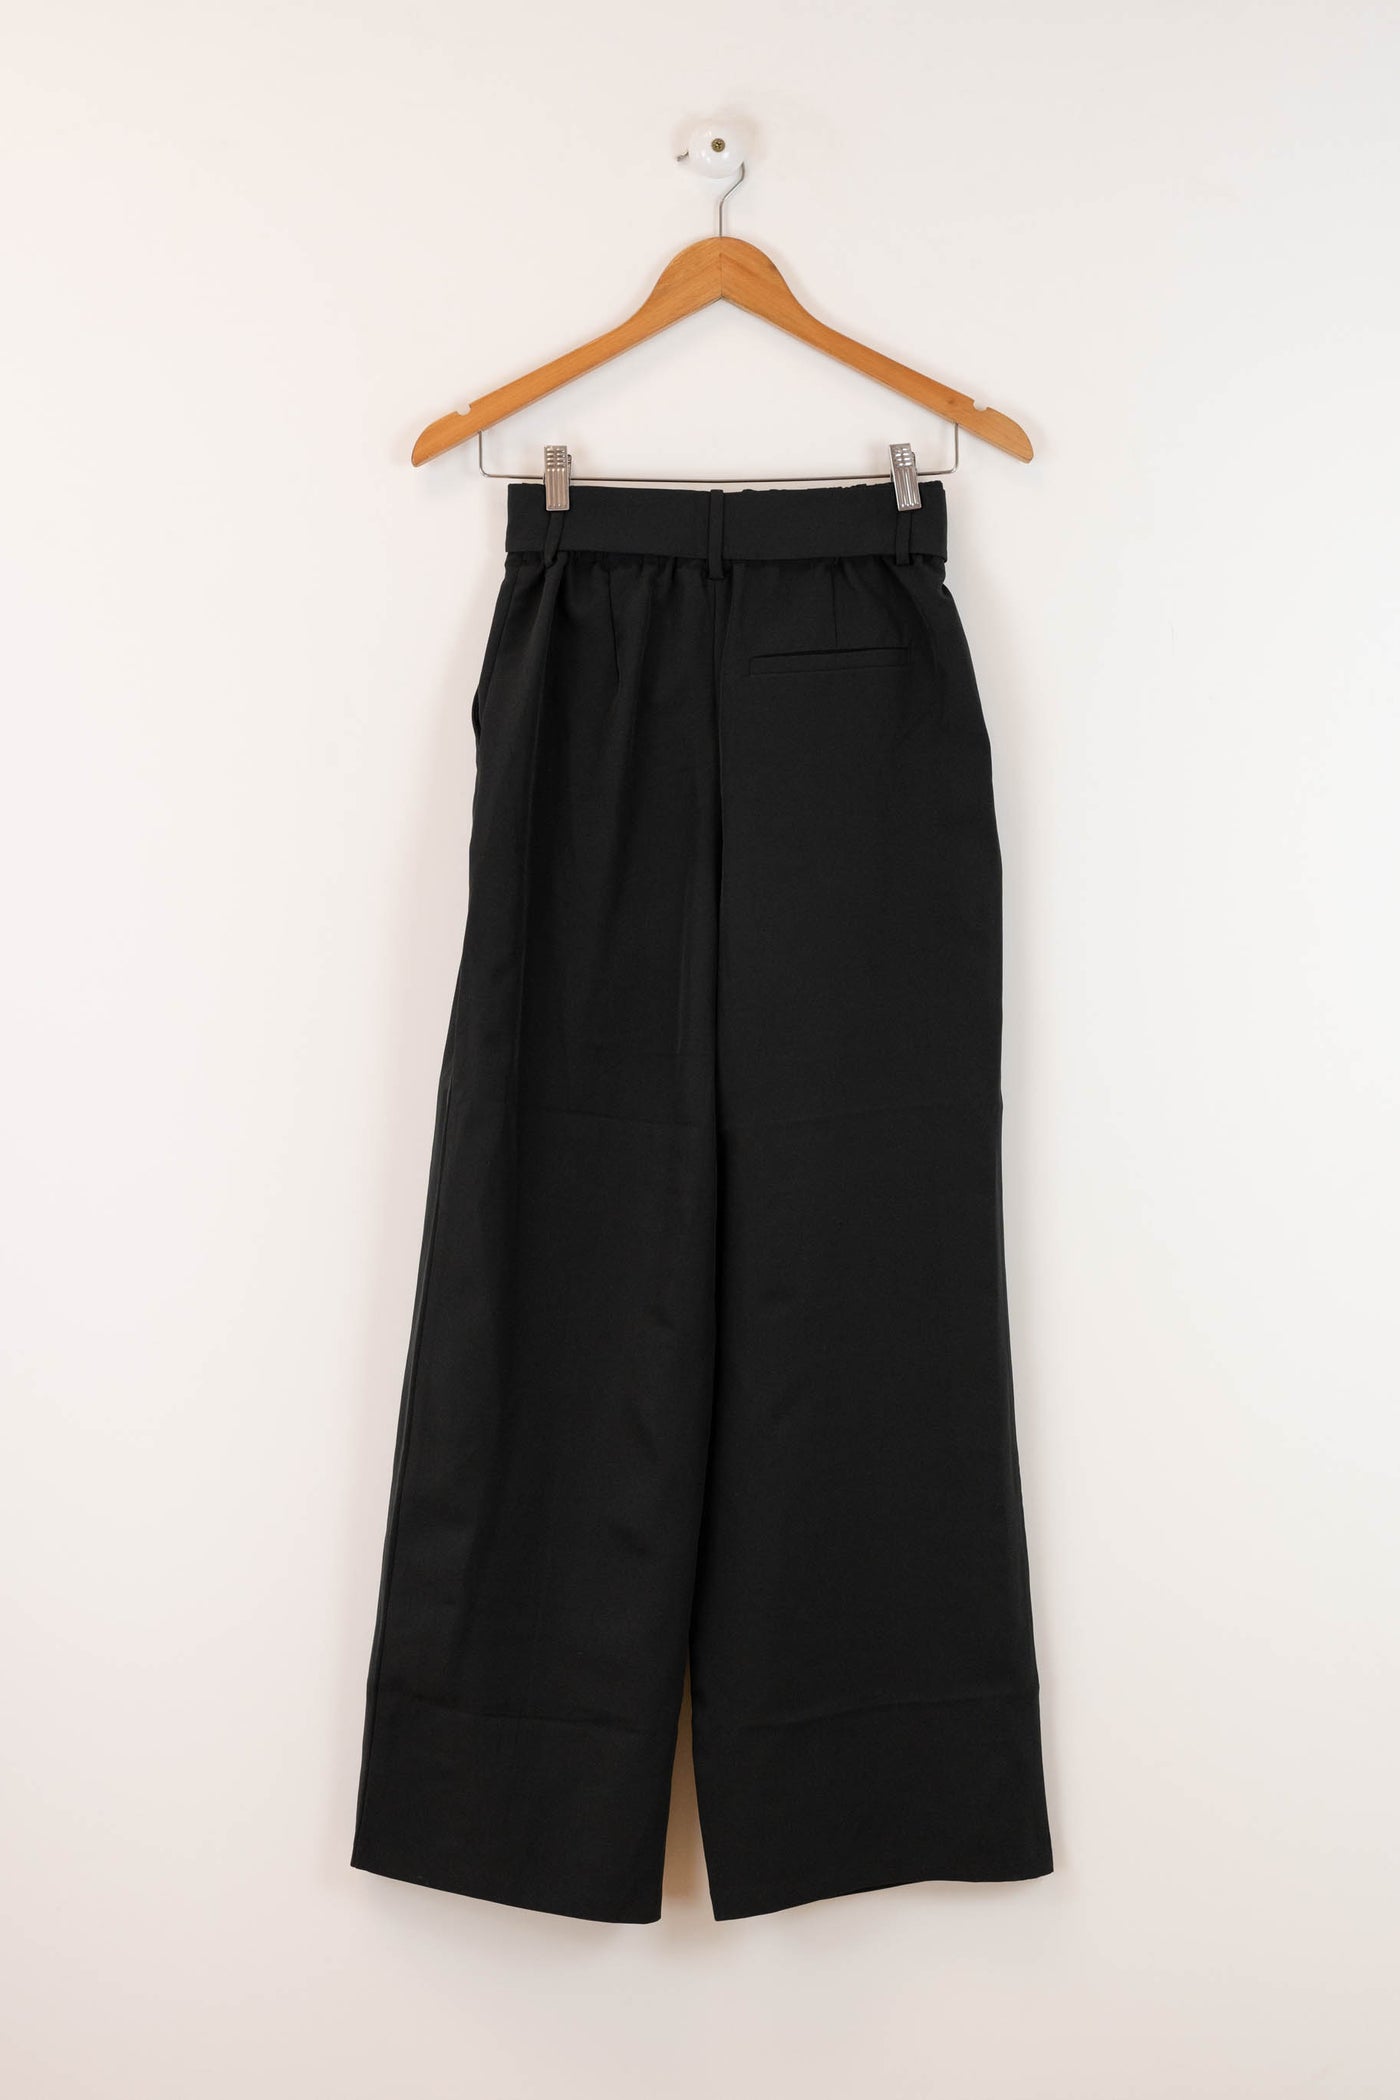 Pantalón negro de camal ancho con cinta